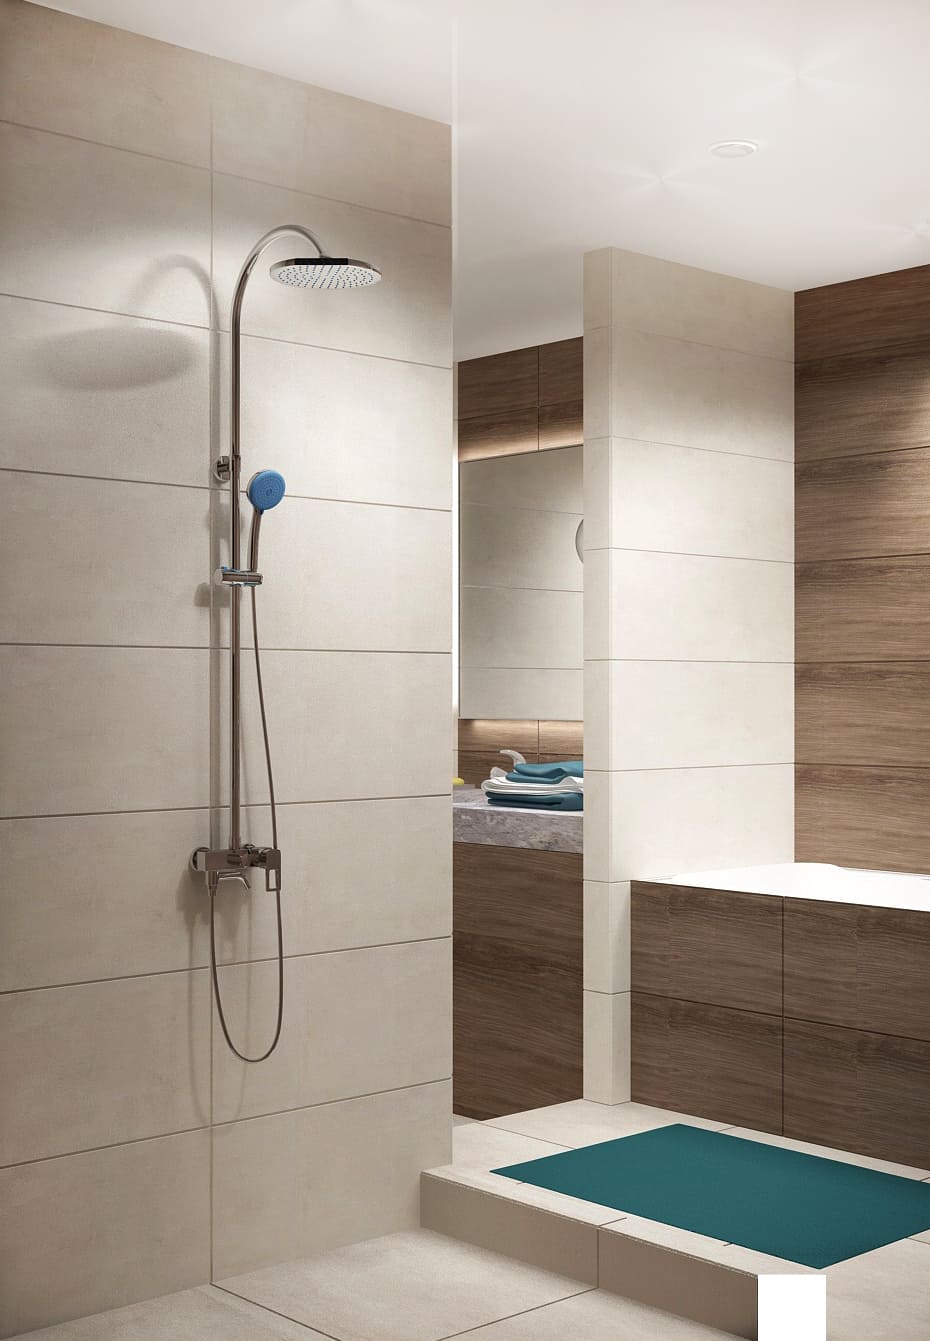 Дизайн интерьера ванной 7 кв.м в древесных тонах с бежевыми оттенками, зеркало, бежевая тумба, сушилка, раковина, подвесной светильник